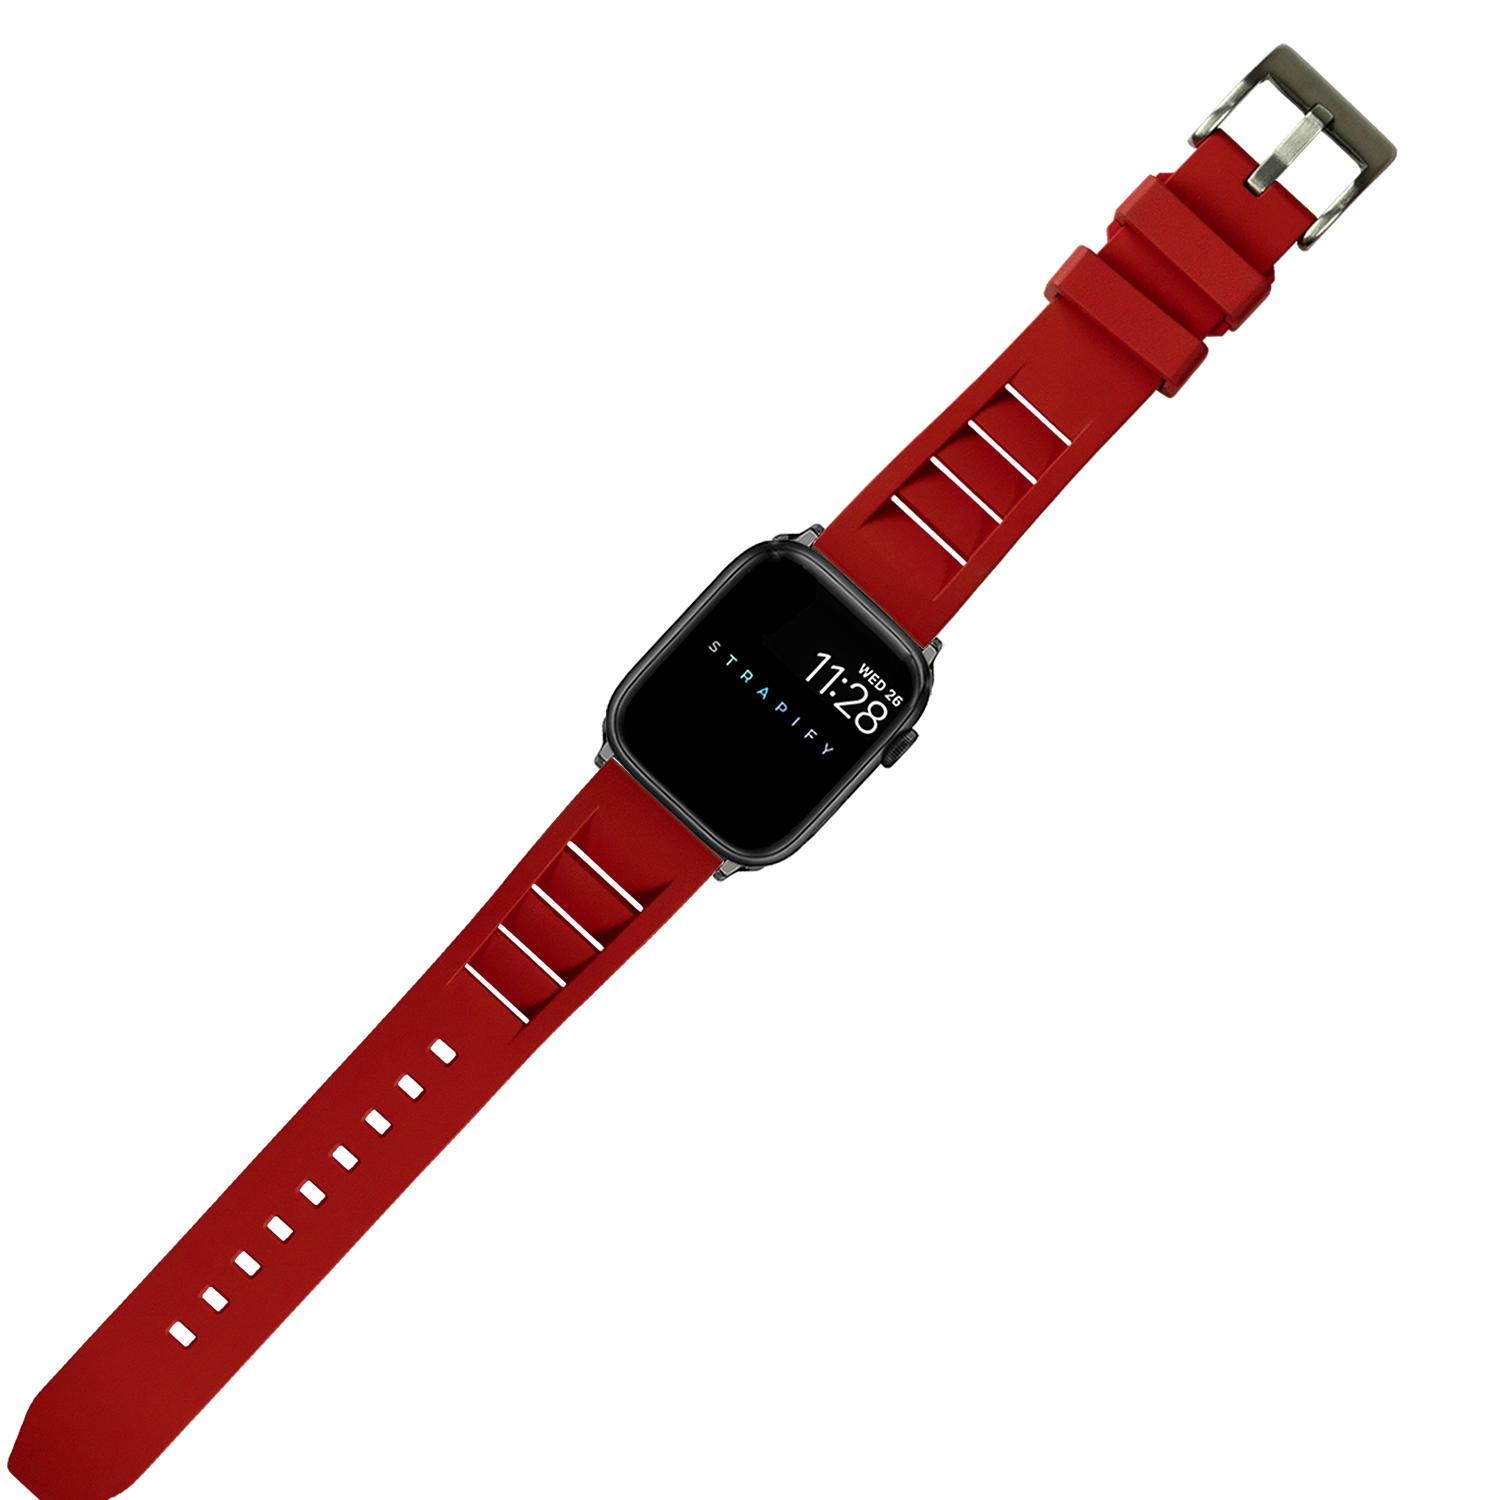 [Apple Watch] Shark Fin FKM Rubber - Red